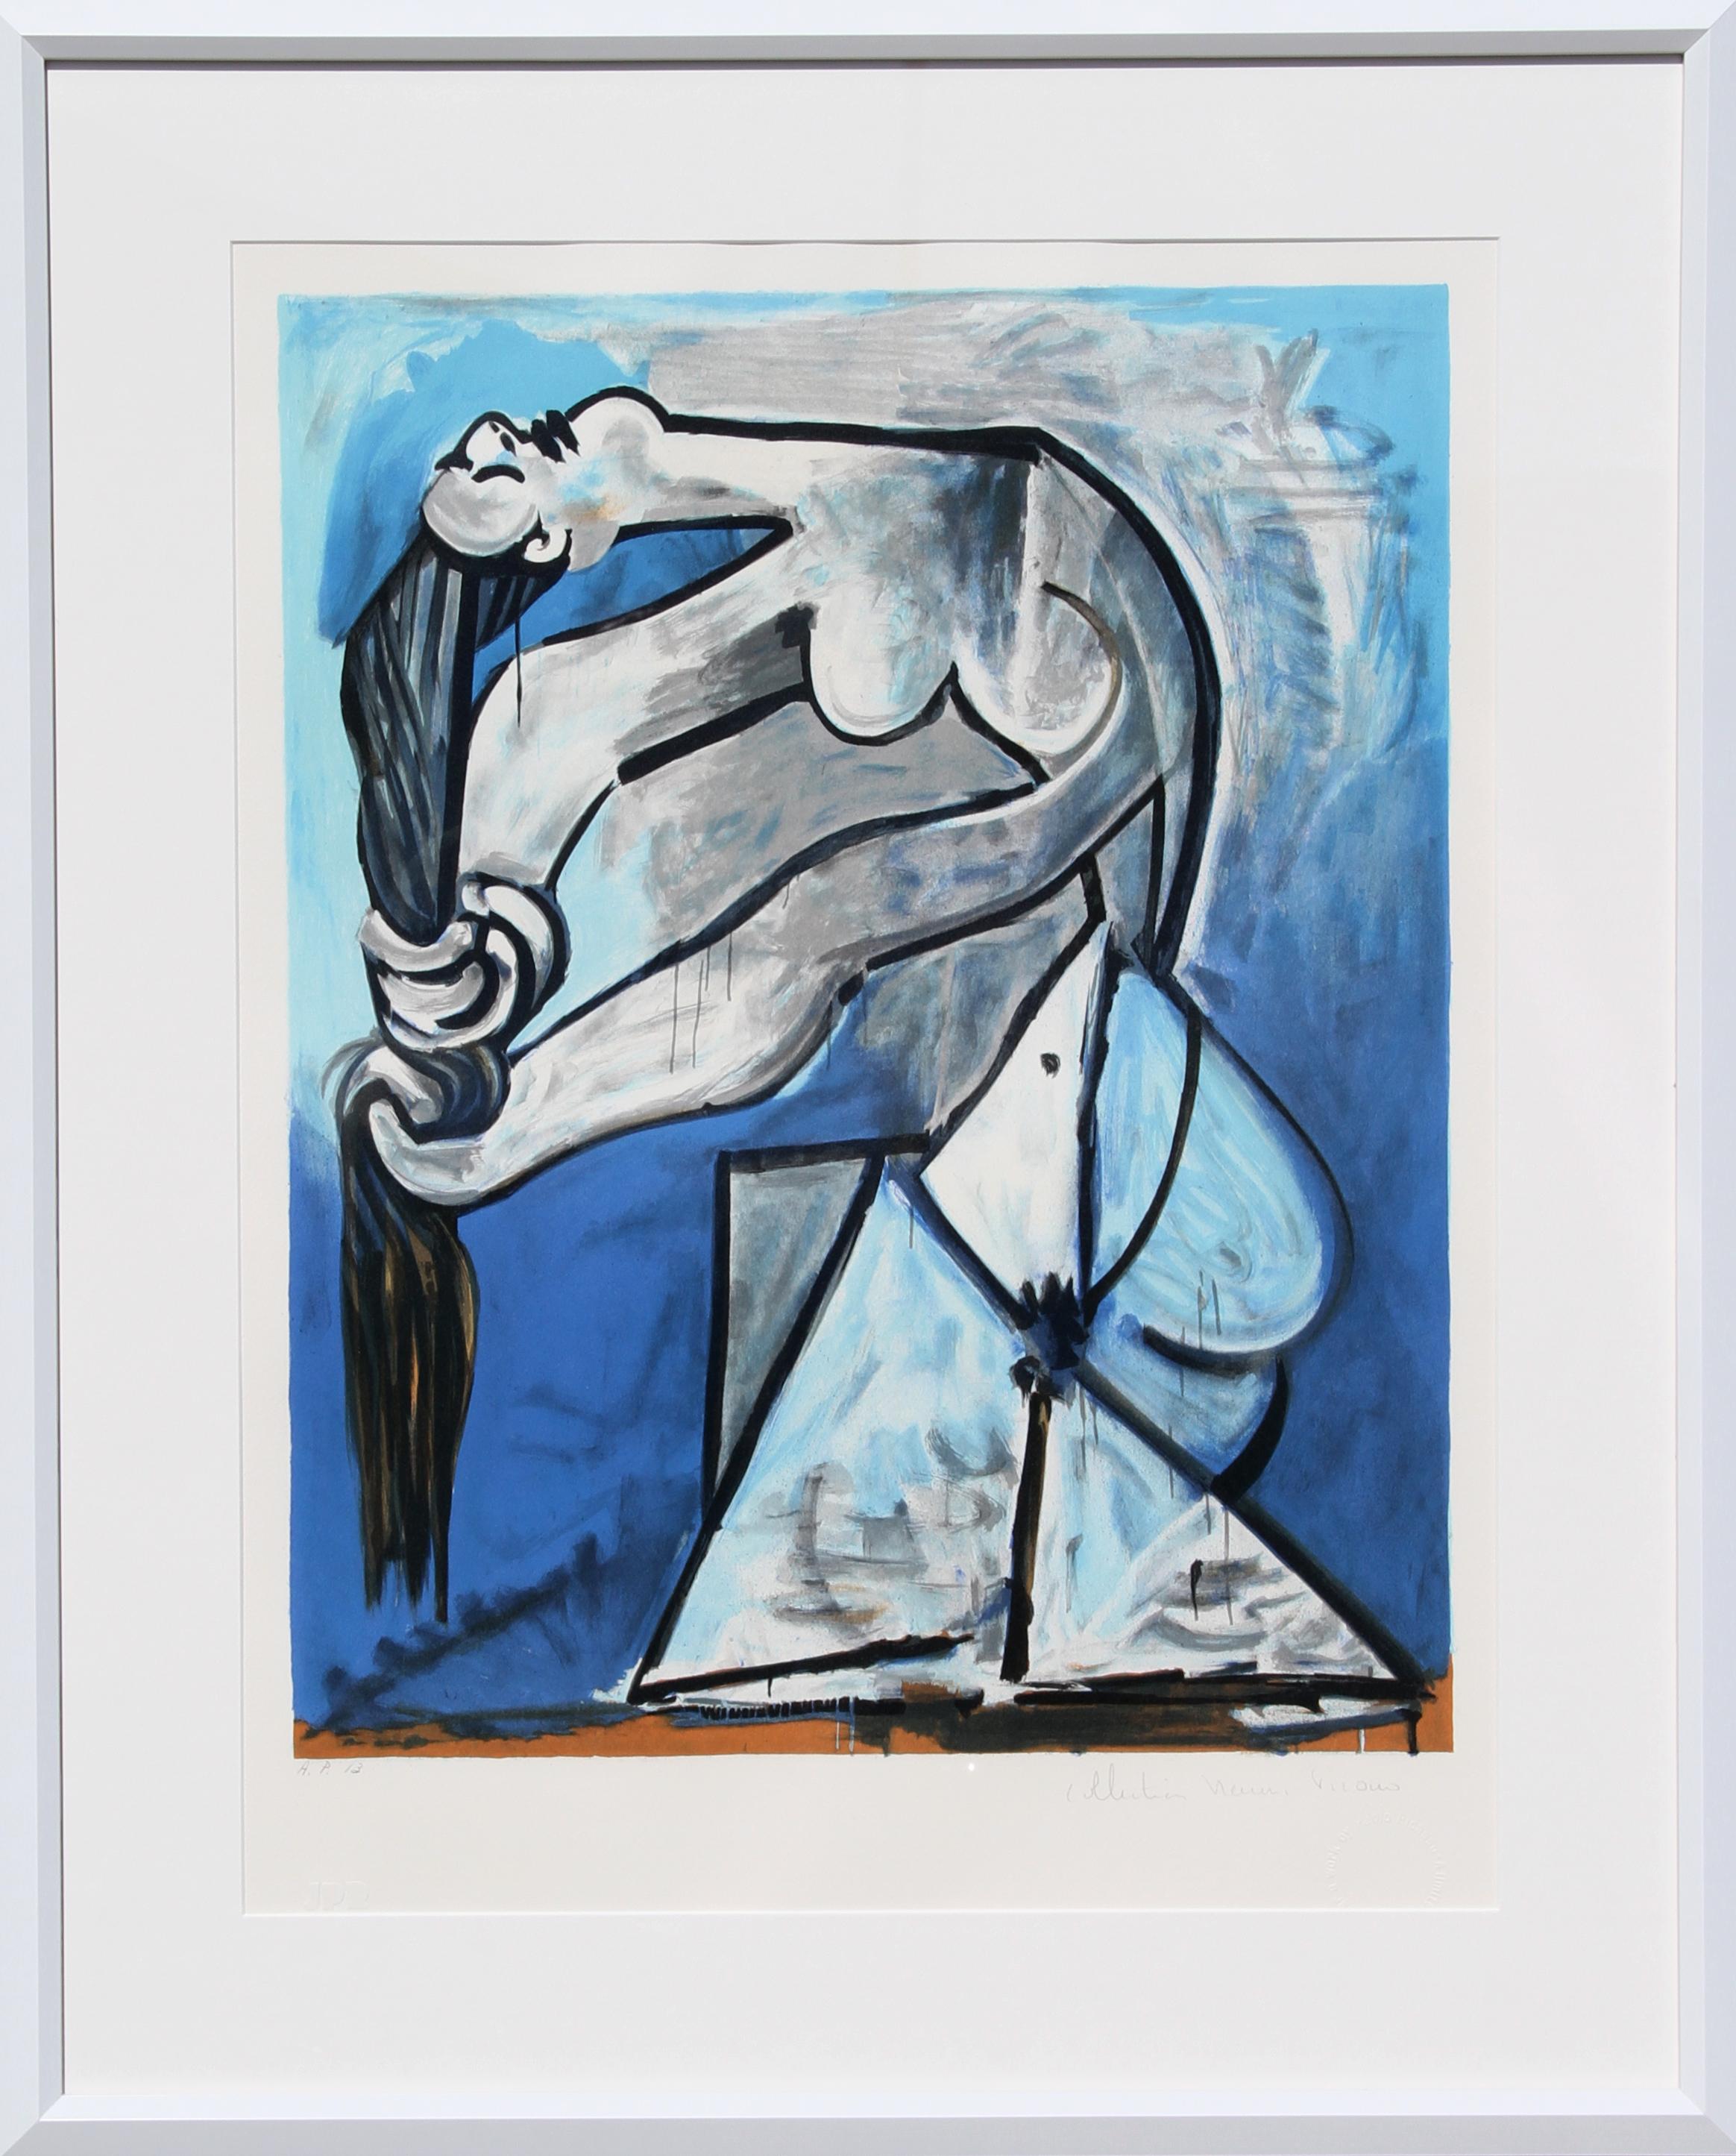 Eine Lithographie aus der Nachlasssammlung Marina Picasso nach dem Gemälde "Nu se tordant les cheveux" von Pablo Picasso.  Das Originalgemälde wurde 1952 fertiggestellt. In den 1970er Jahren, nach Picassos Tod, autorisierte Marina Picasso, seine